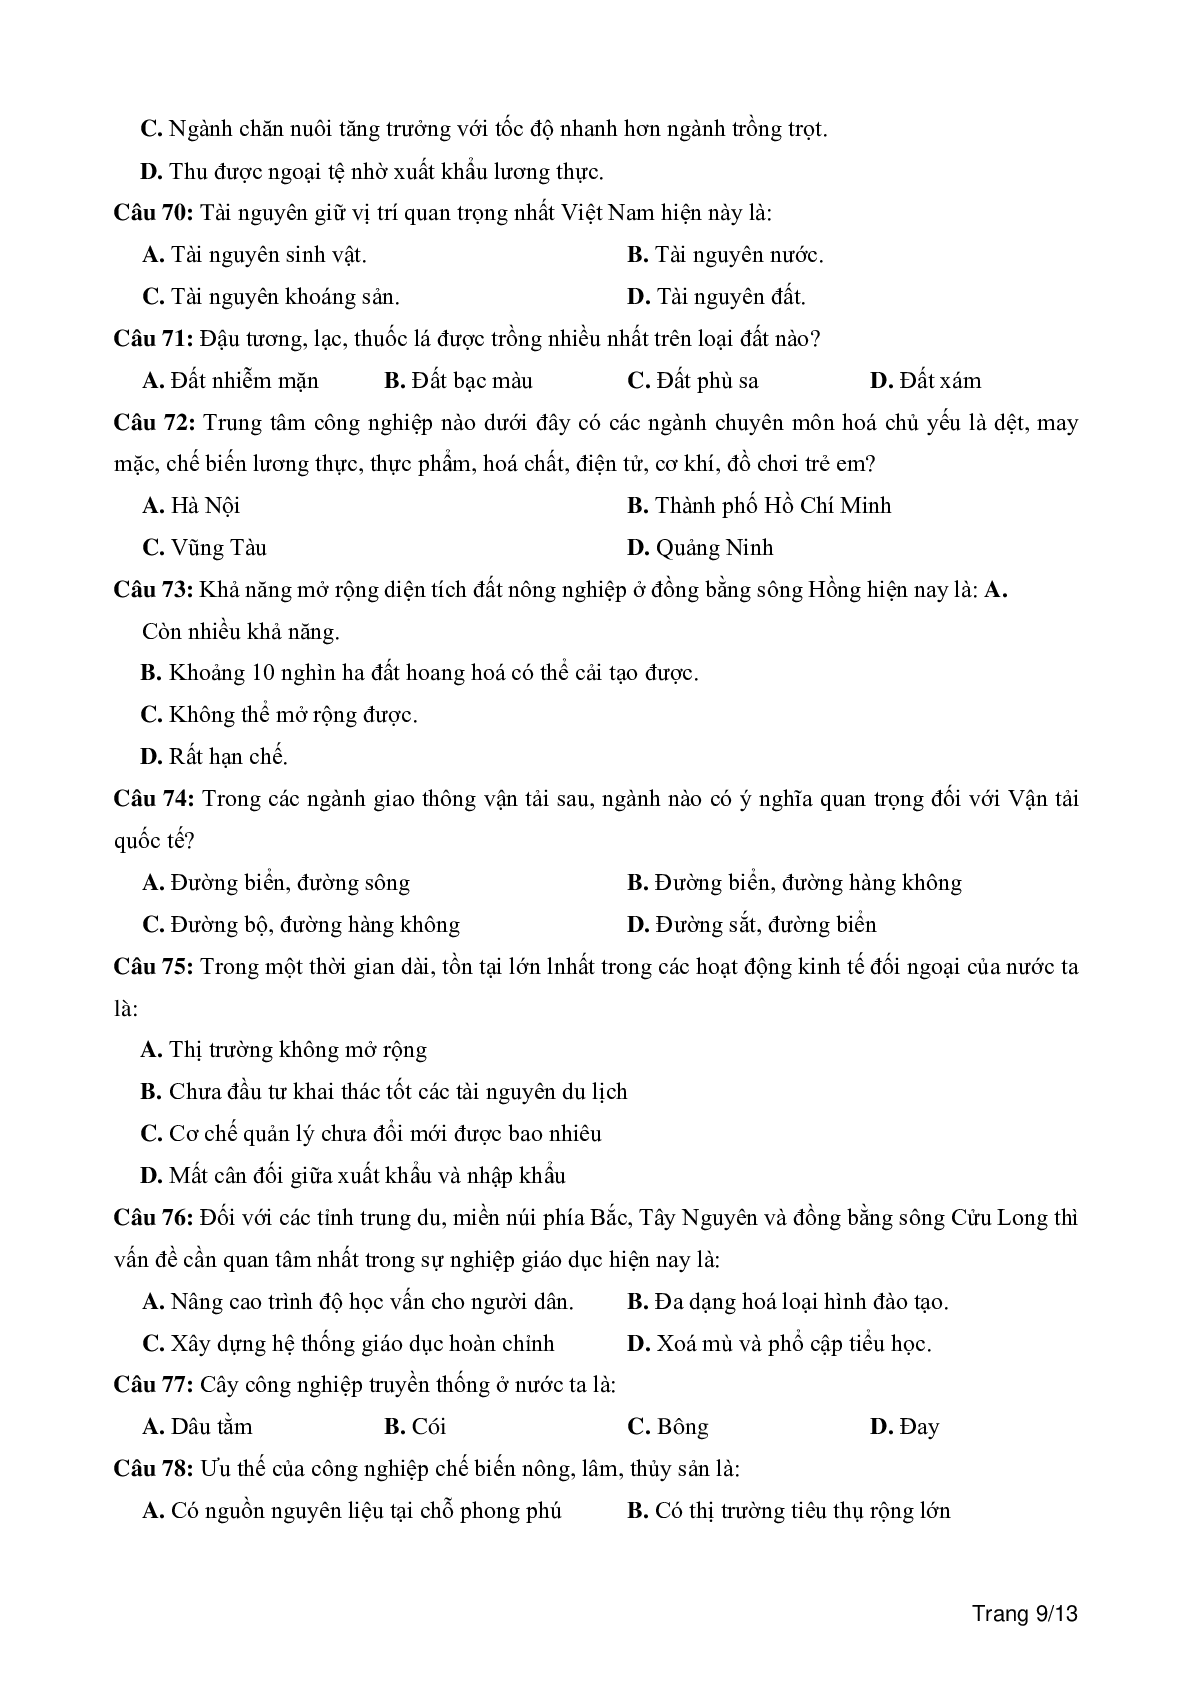 100 câu trắc nghiệm khách quan môn Địa lí lớp 12 (trang 9)